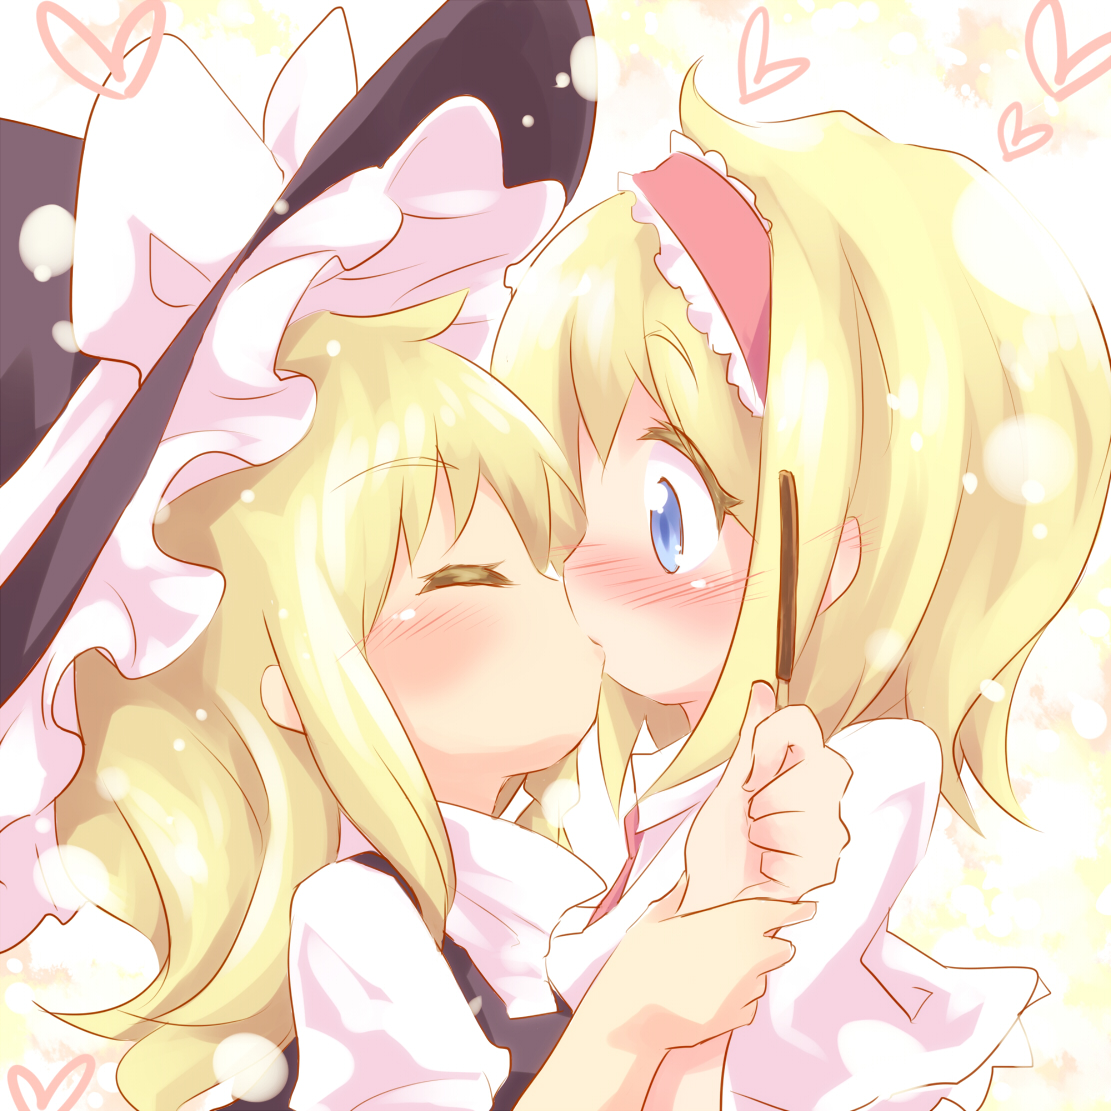 Pairing: Alice x Marisa. 